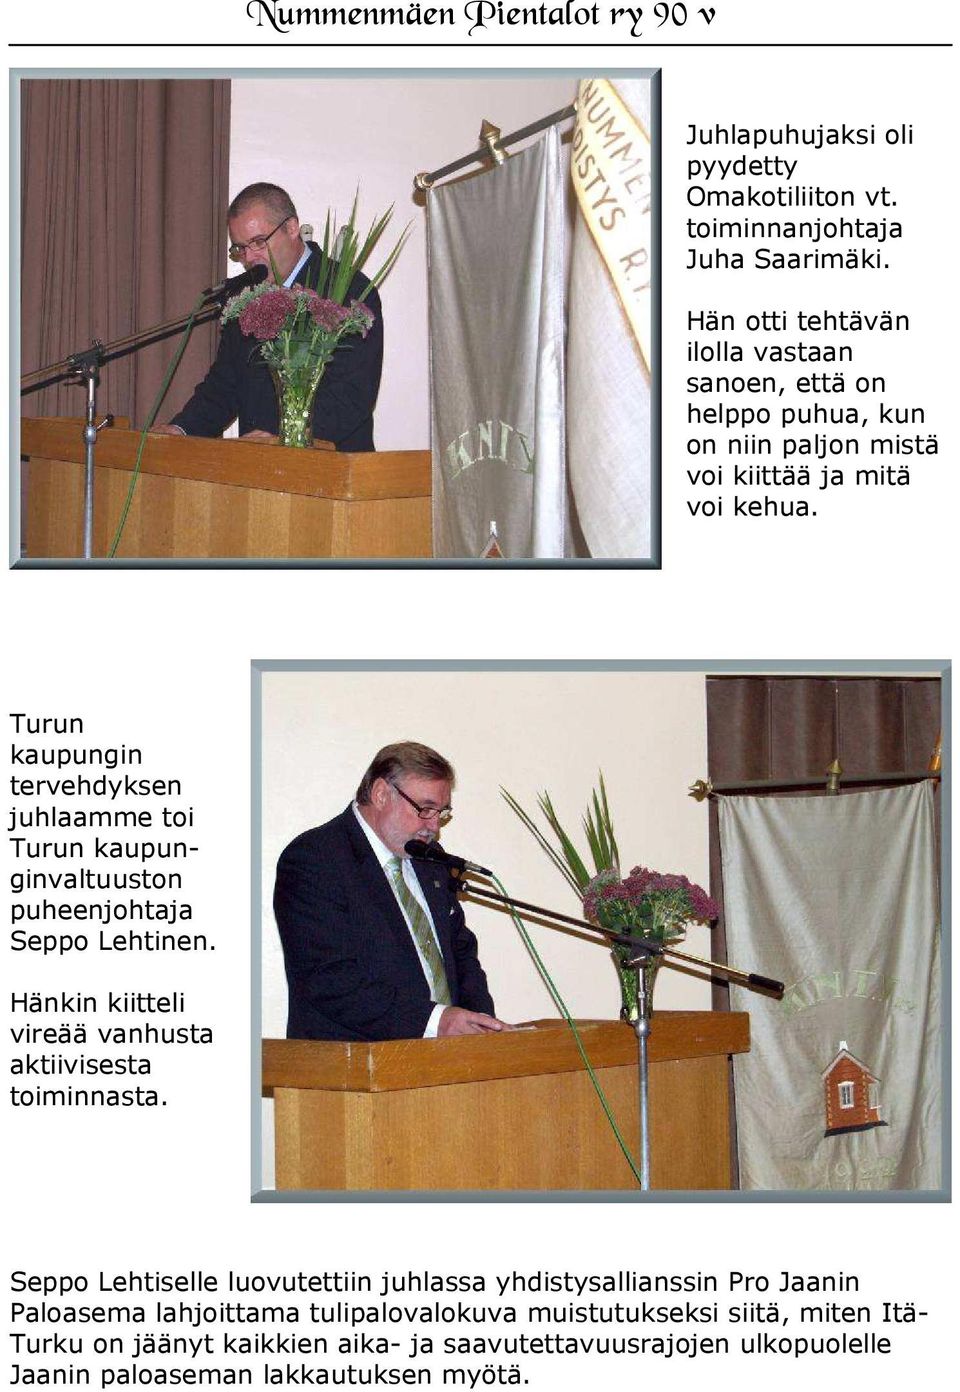 Turun kaupungin tervehdyksen juhlaamme toi Turun kaupunginvaltuuston puheenjohtaja Seppo Lehtinen.